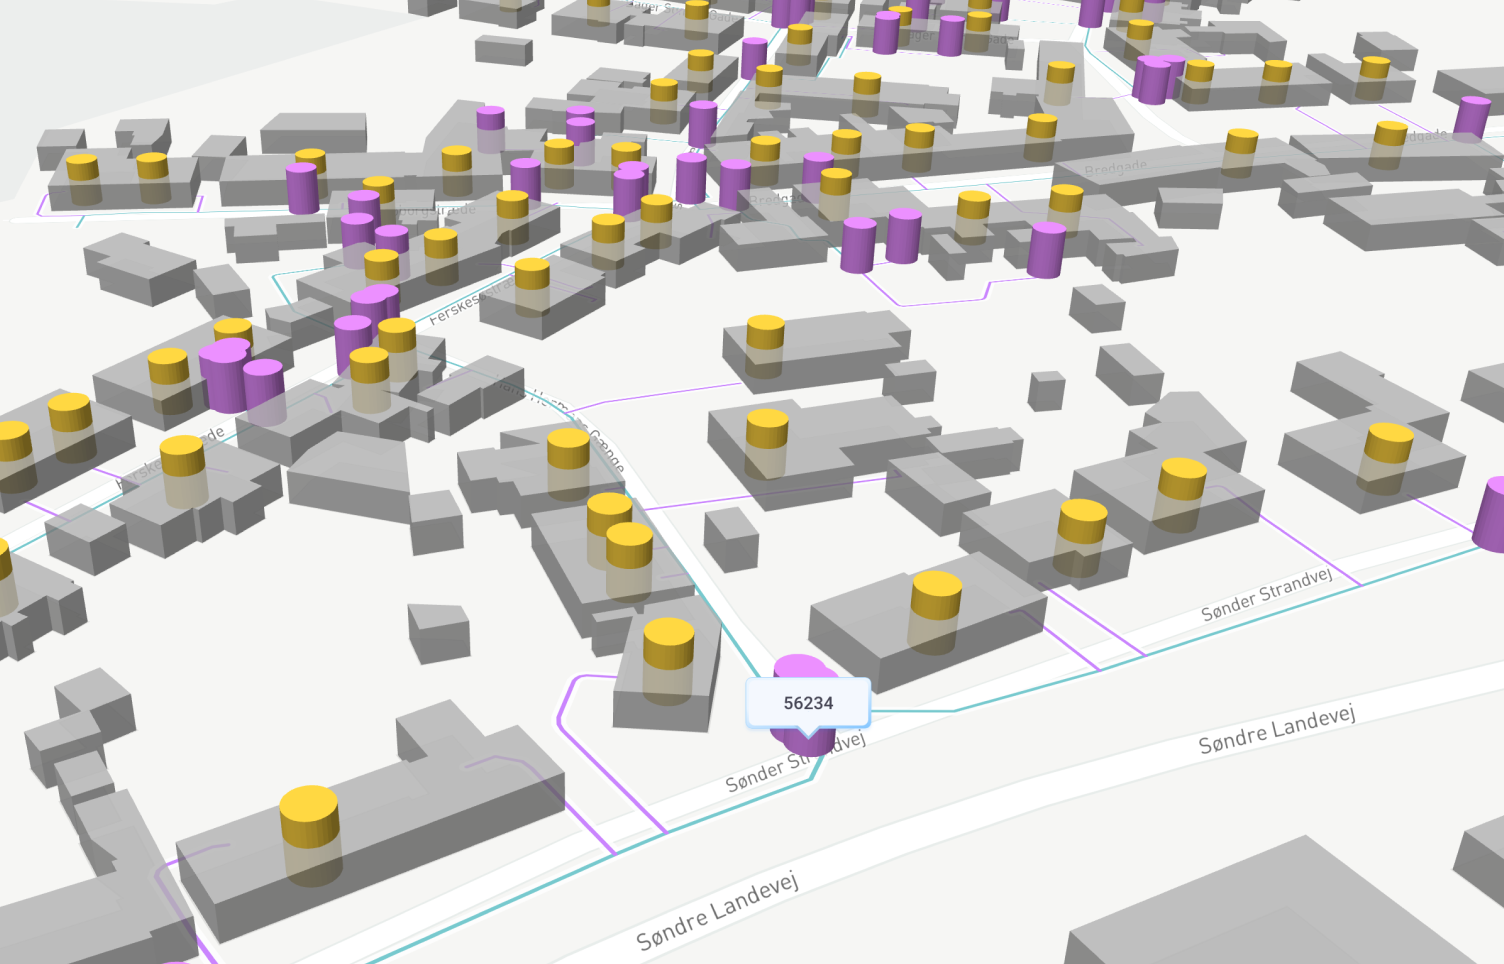 3D urban geospatial visualization